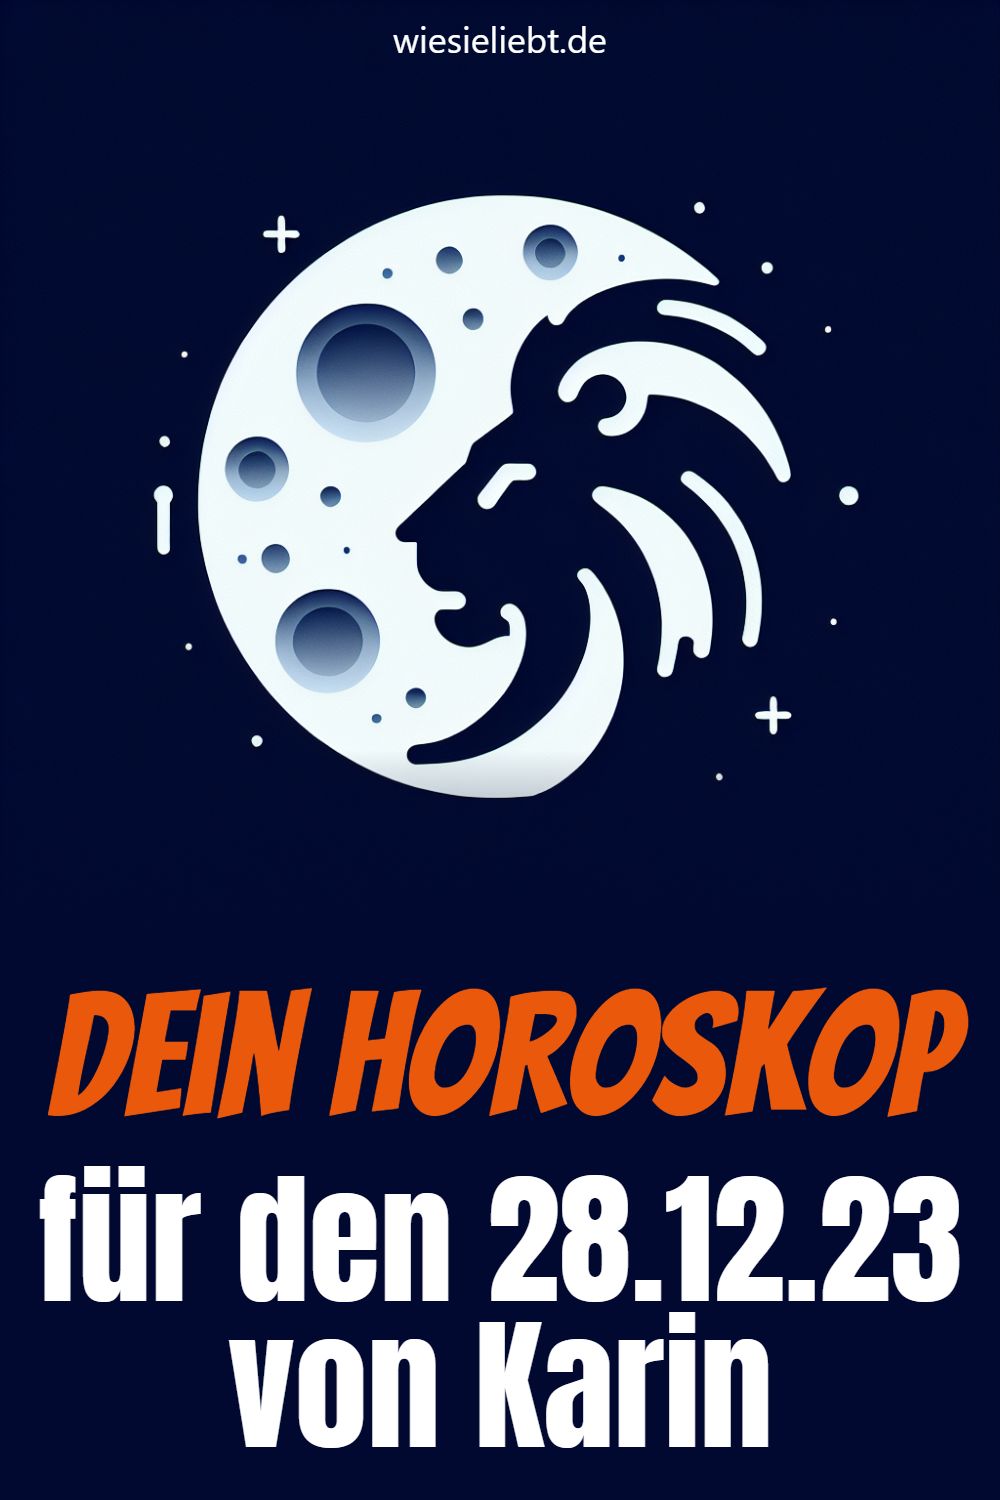 Dein Horoskop für den 28.12.23 von Karin